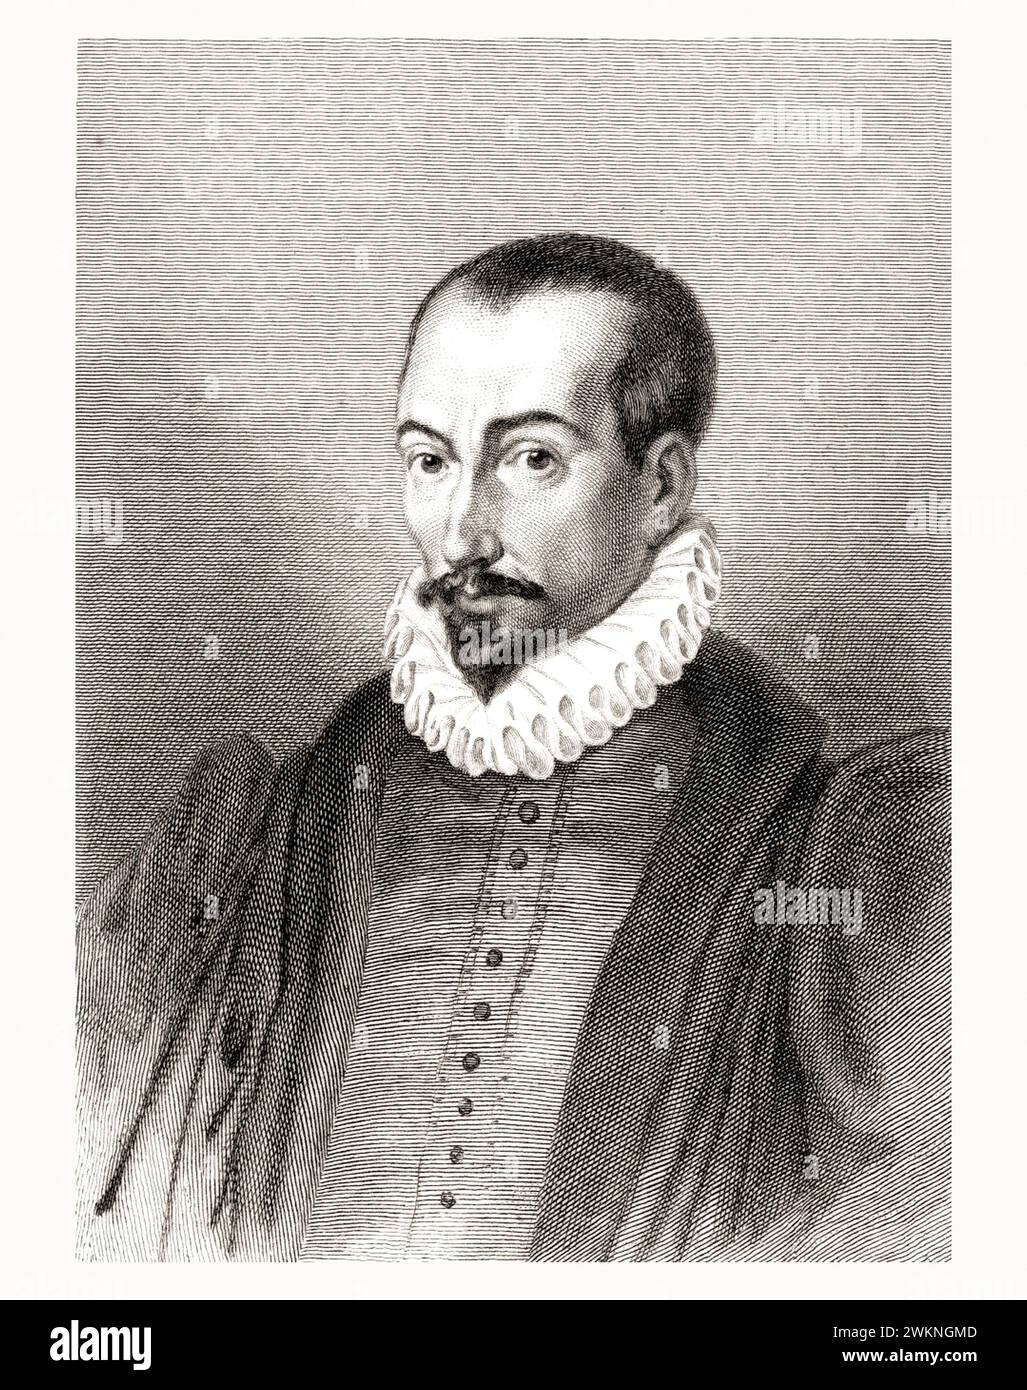 1585 c. , FRANCE : The italian jurist , historian and writer  PIERRE PITHOU ( 1539 - 1596 ). Portrait engraved by Gavard , pubblished in 1839 . - HISTORY - FOTO STORICHE - HISTORIAN - STORICO - SCRITTORE - WRITER - LETTERATURA - LITERATURE - giureconsulto - GIURISTA - LEGGE - LAY - nobili - nobiltà francese - french nobility - FRANCIA - INCISIONE - ENGRAVING - ILLUSTRATION - ILLUSTRAZIONE  - collar - collare - colletto - GORGIERA - pizzo - lace -   beard - barba --- Archivio GBB Stock Photo